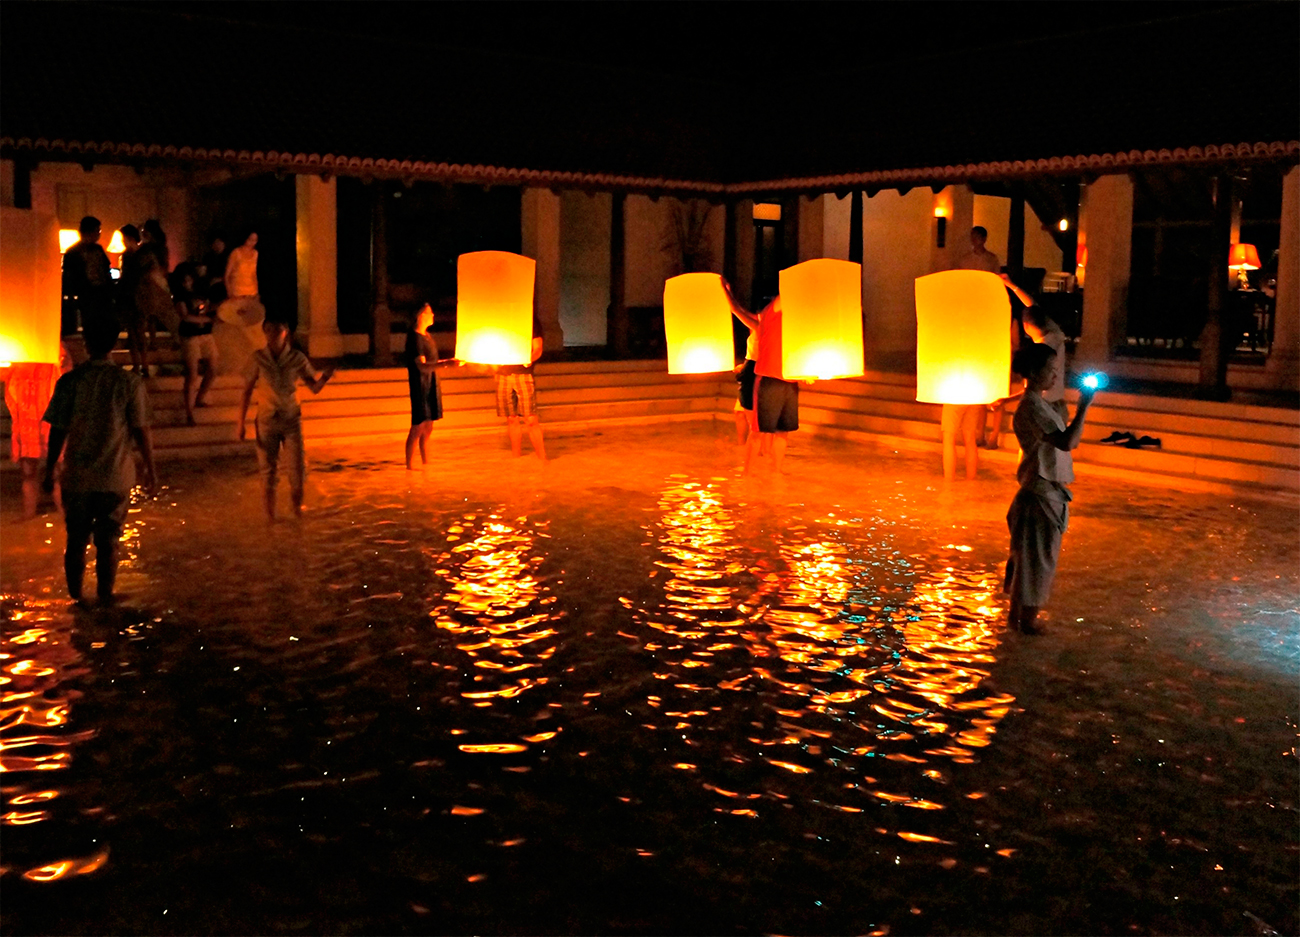 Отель Le Meridien на Ко Самуи. Традиция отеля - запускать плавающие фонарики каждую ночь, в новогоднюю - само собой!